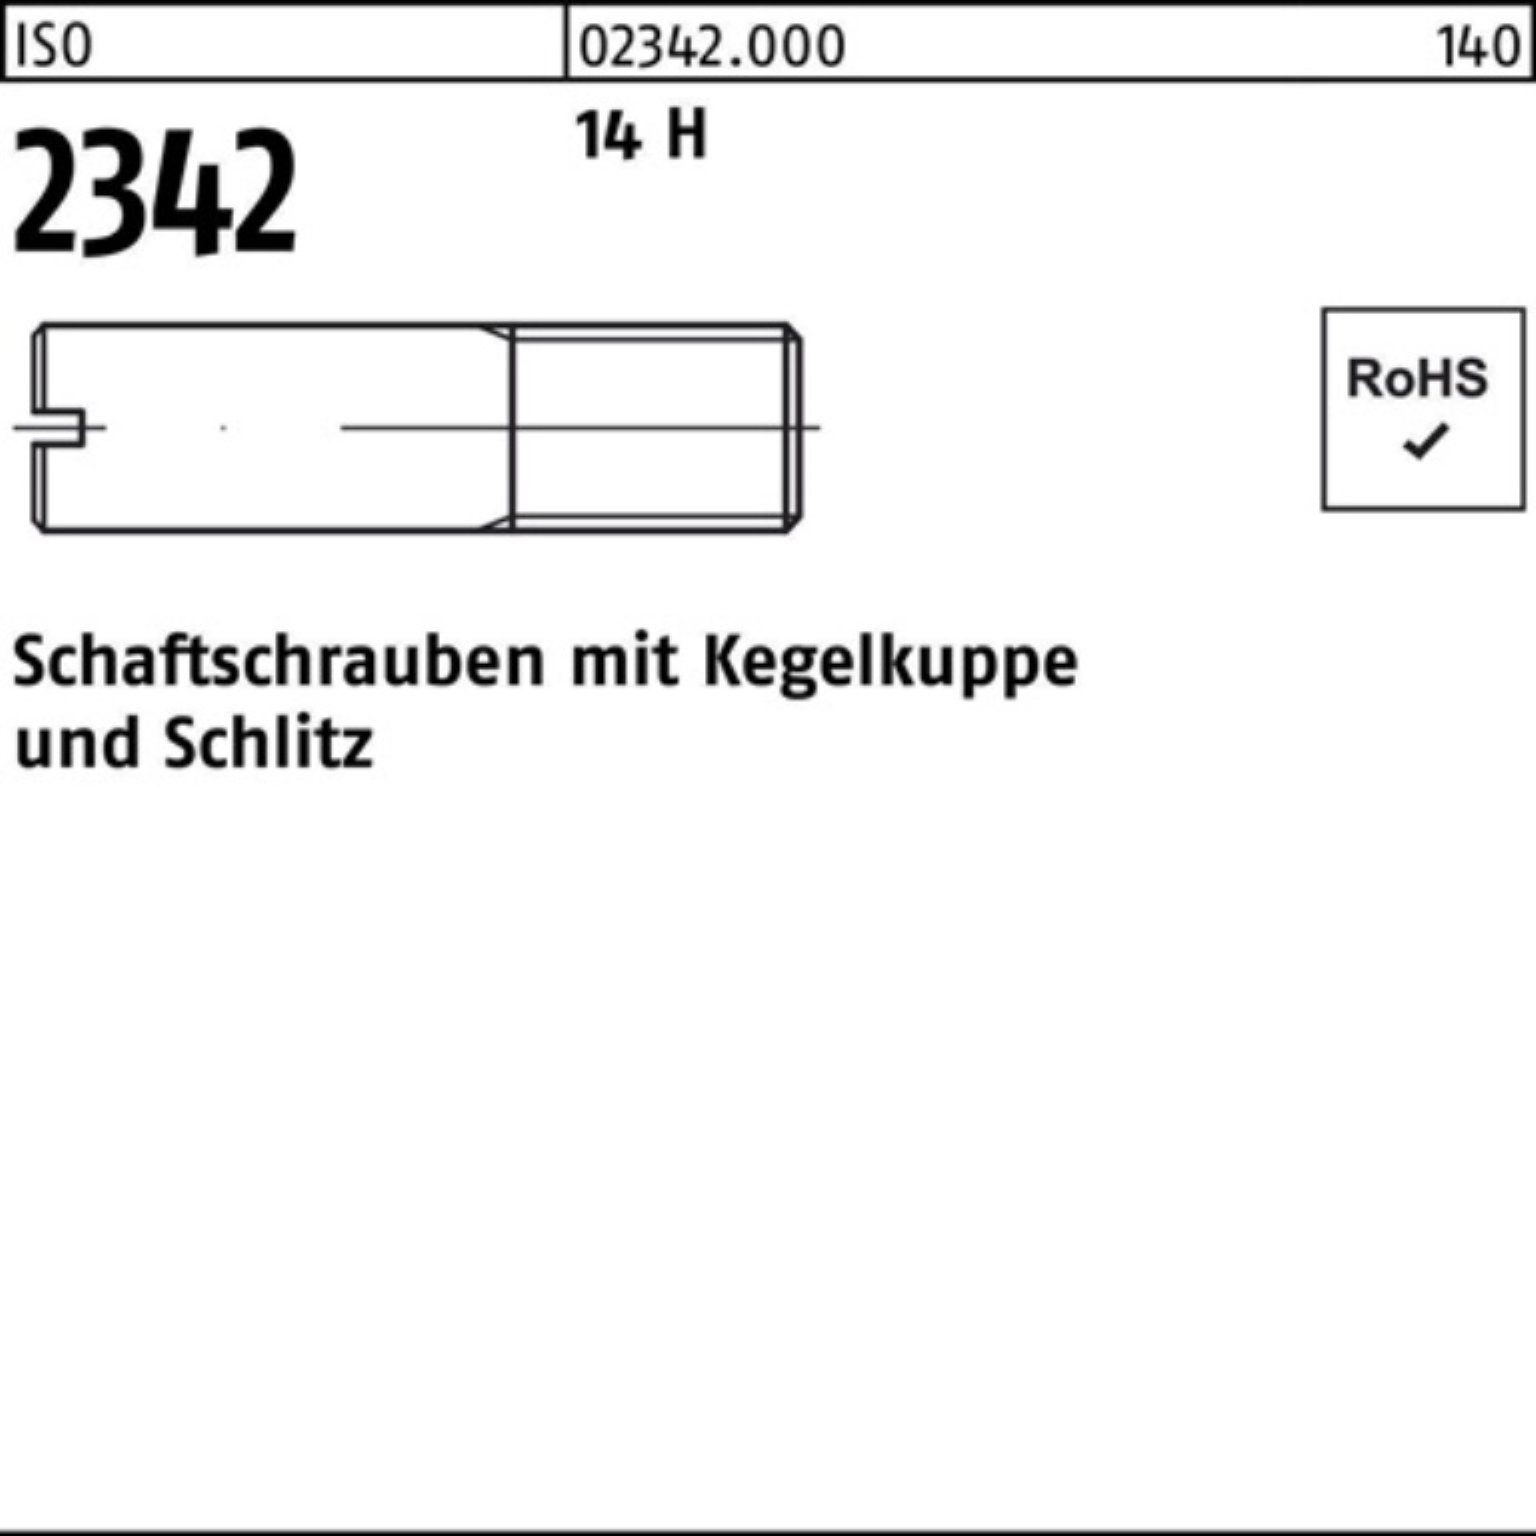 Reyher Schraube 100er Pack Schaftschraube ISO 2342 Kegelkuppe/Schlitz M12x 50 14 H 50